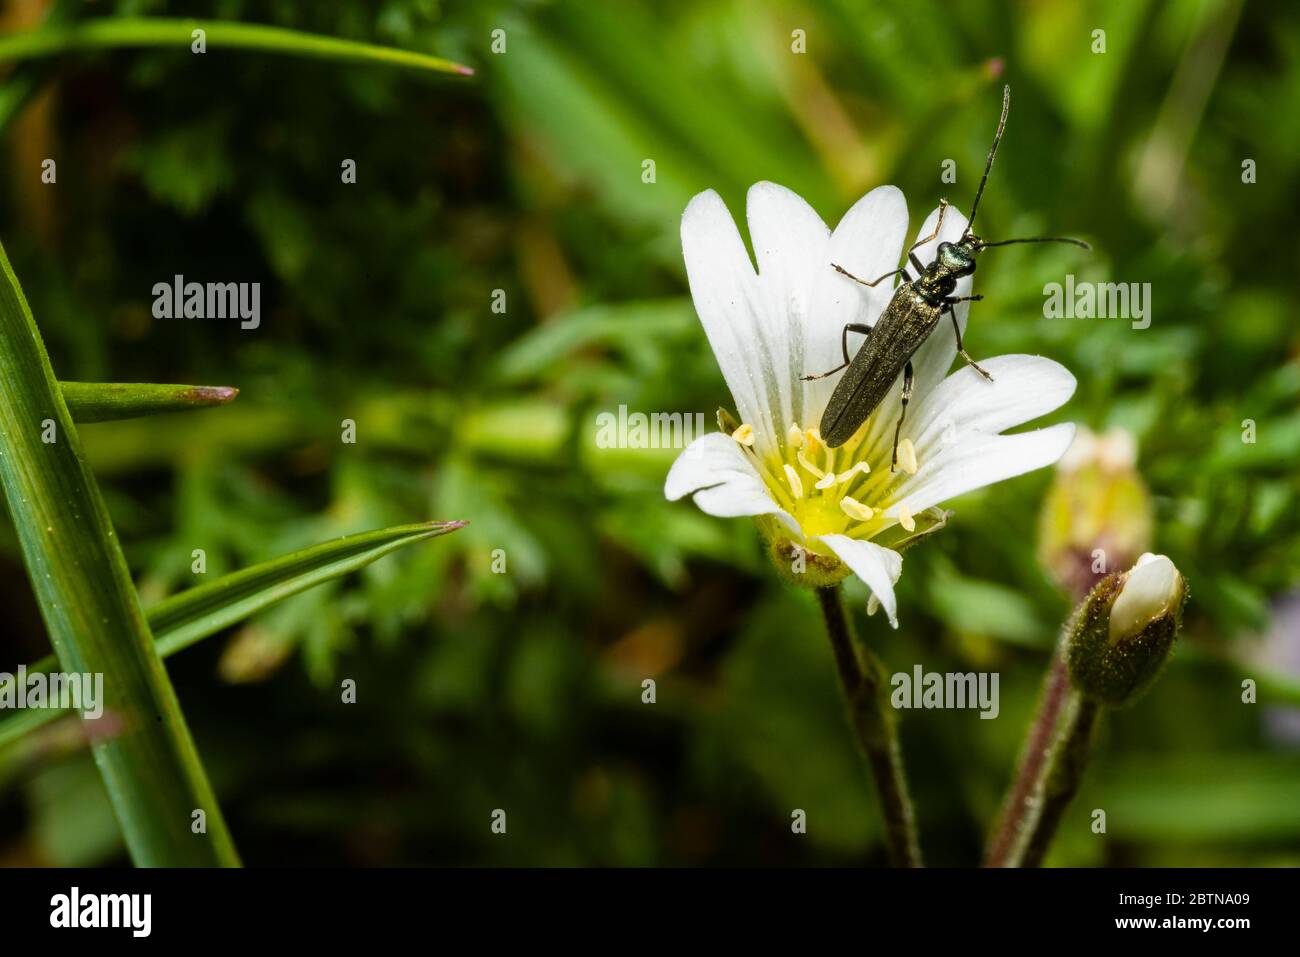 Un petit coléoptère de longhorn se trouve sur une fleur blanche, photo macro Banque D'Images